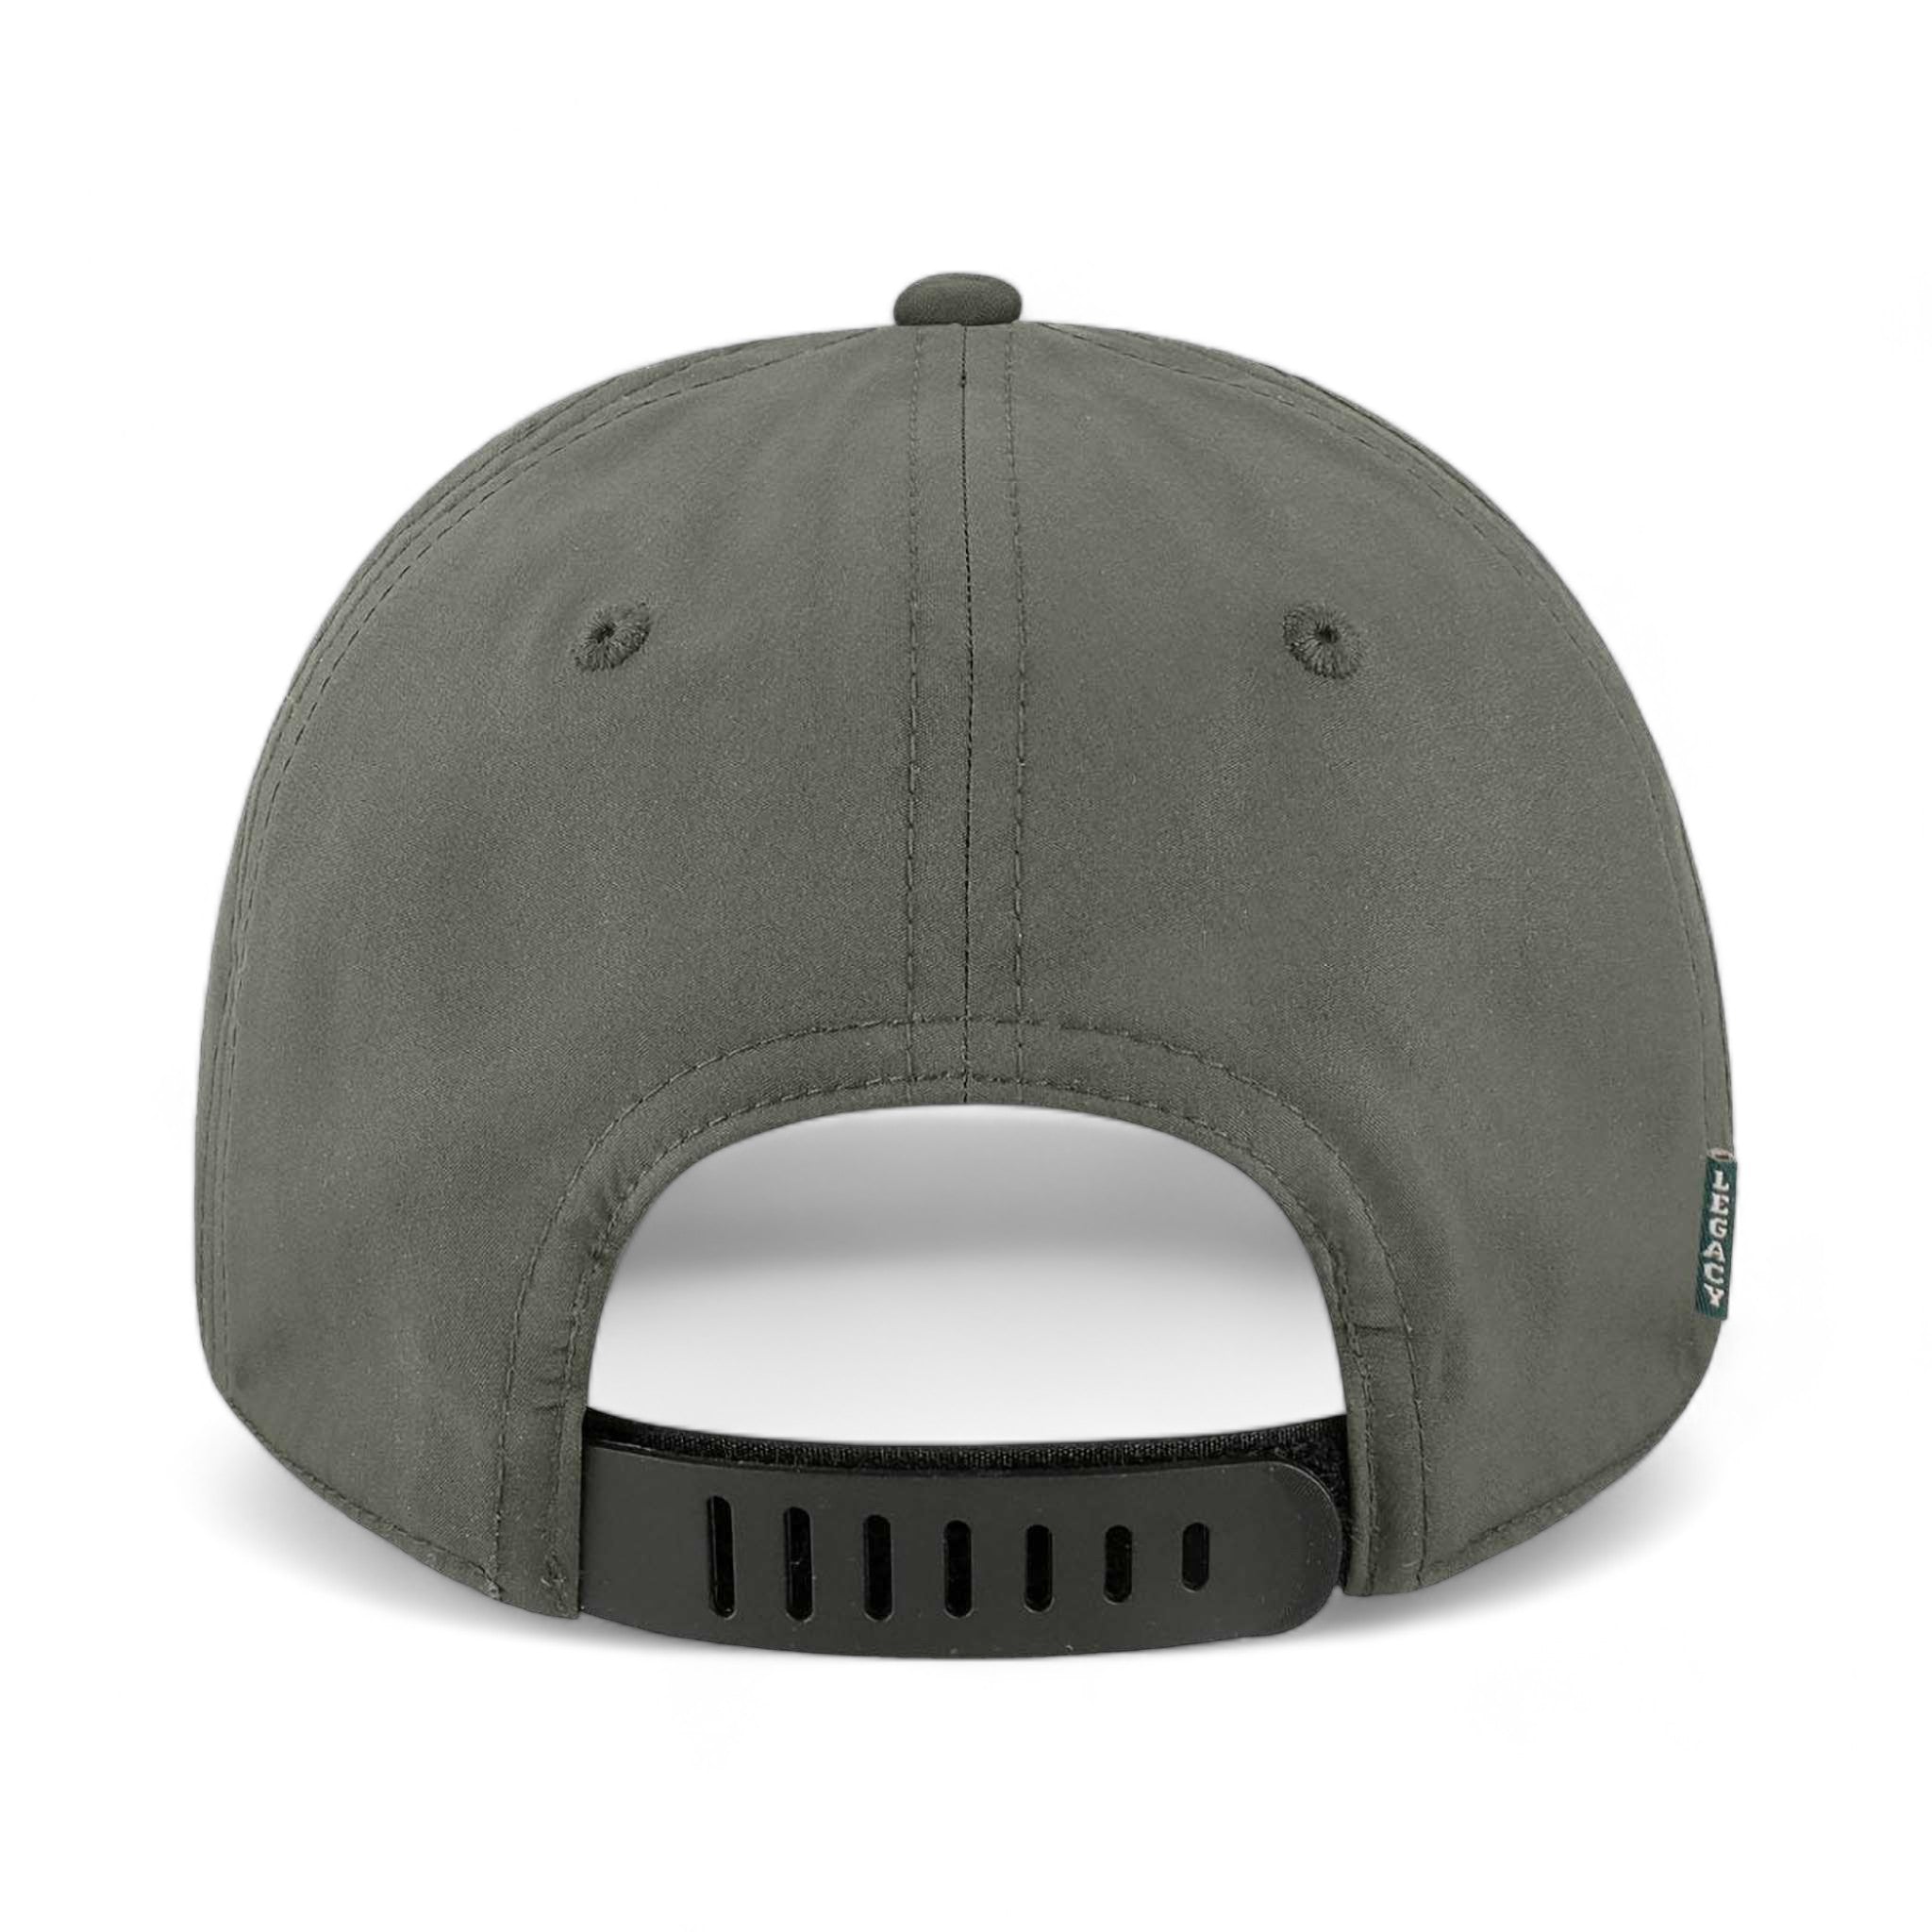 Back view of LEGACY B9A custom hat in dark grey